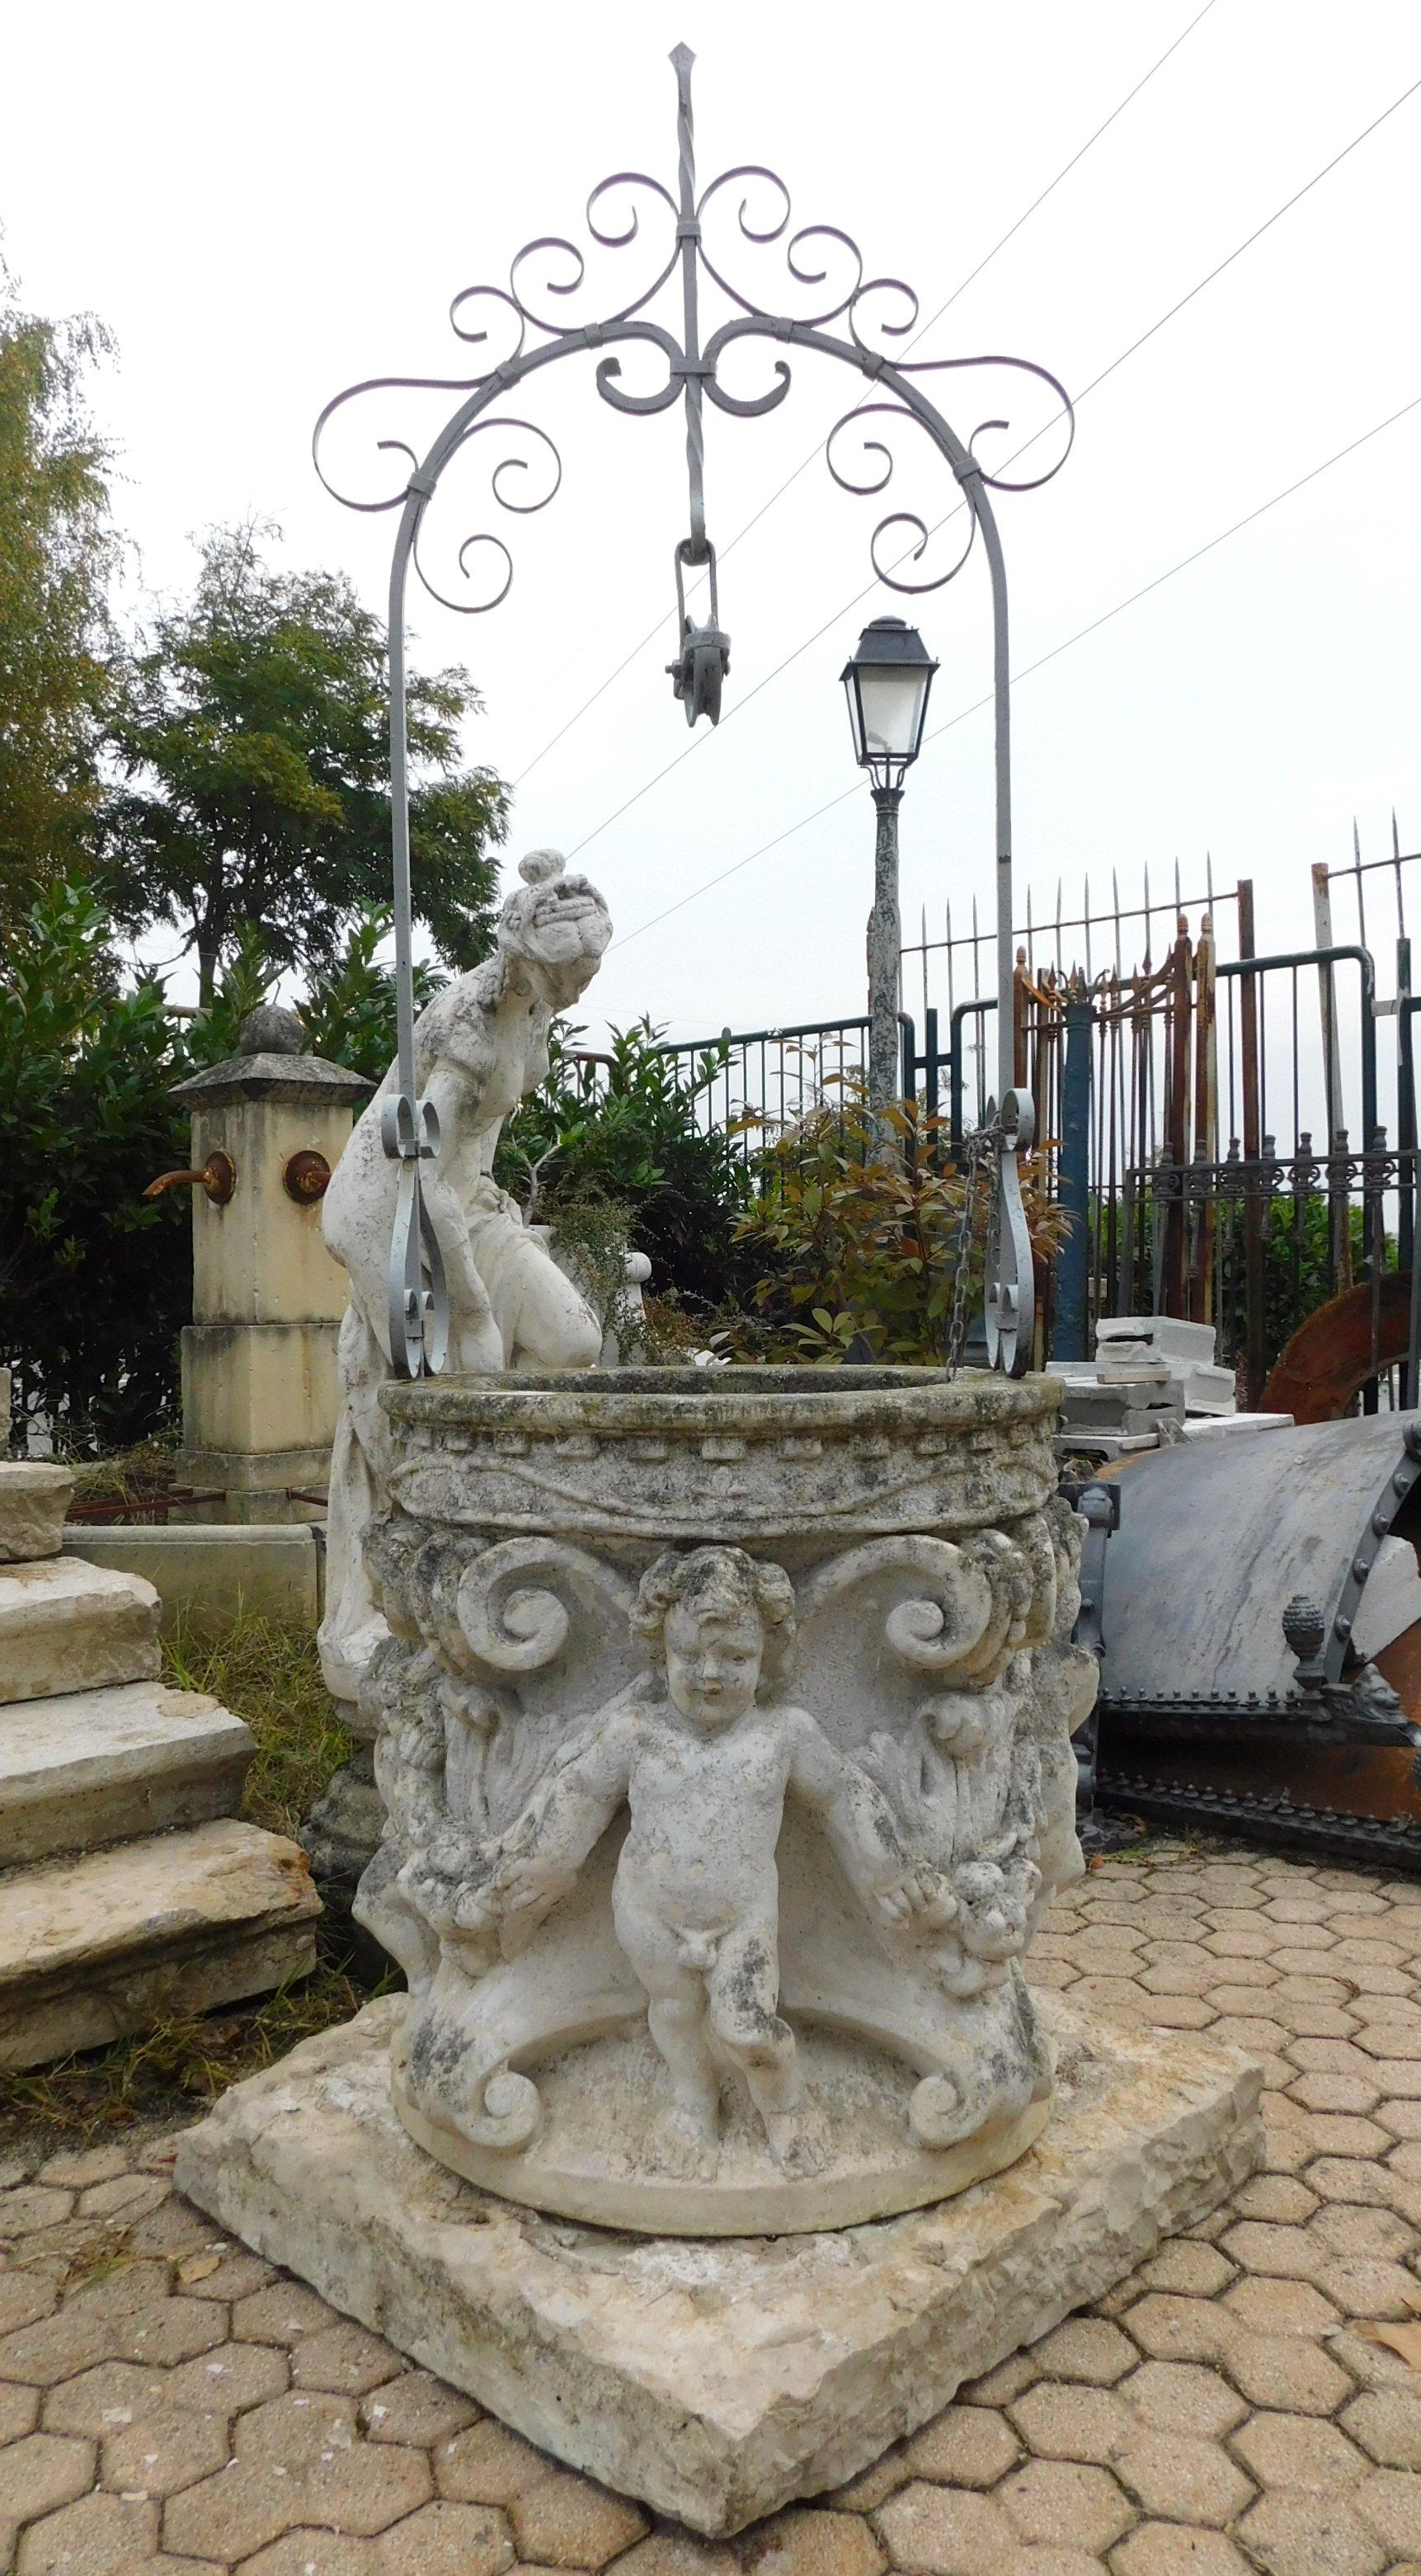 Antiker runder Brunnen aus altem Vicenza-Stein mit handgefertigten Skulpturen von Putten, Girlanden und Dekorationen der Zeit, die im 19. Jahrhundert in Norditalien für den Garten eines Adelspalastes angefertigt wurden.
Gut in sehr gutem Zustand,